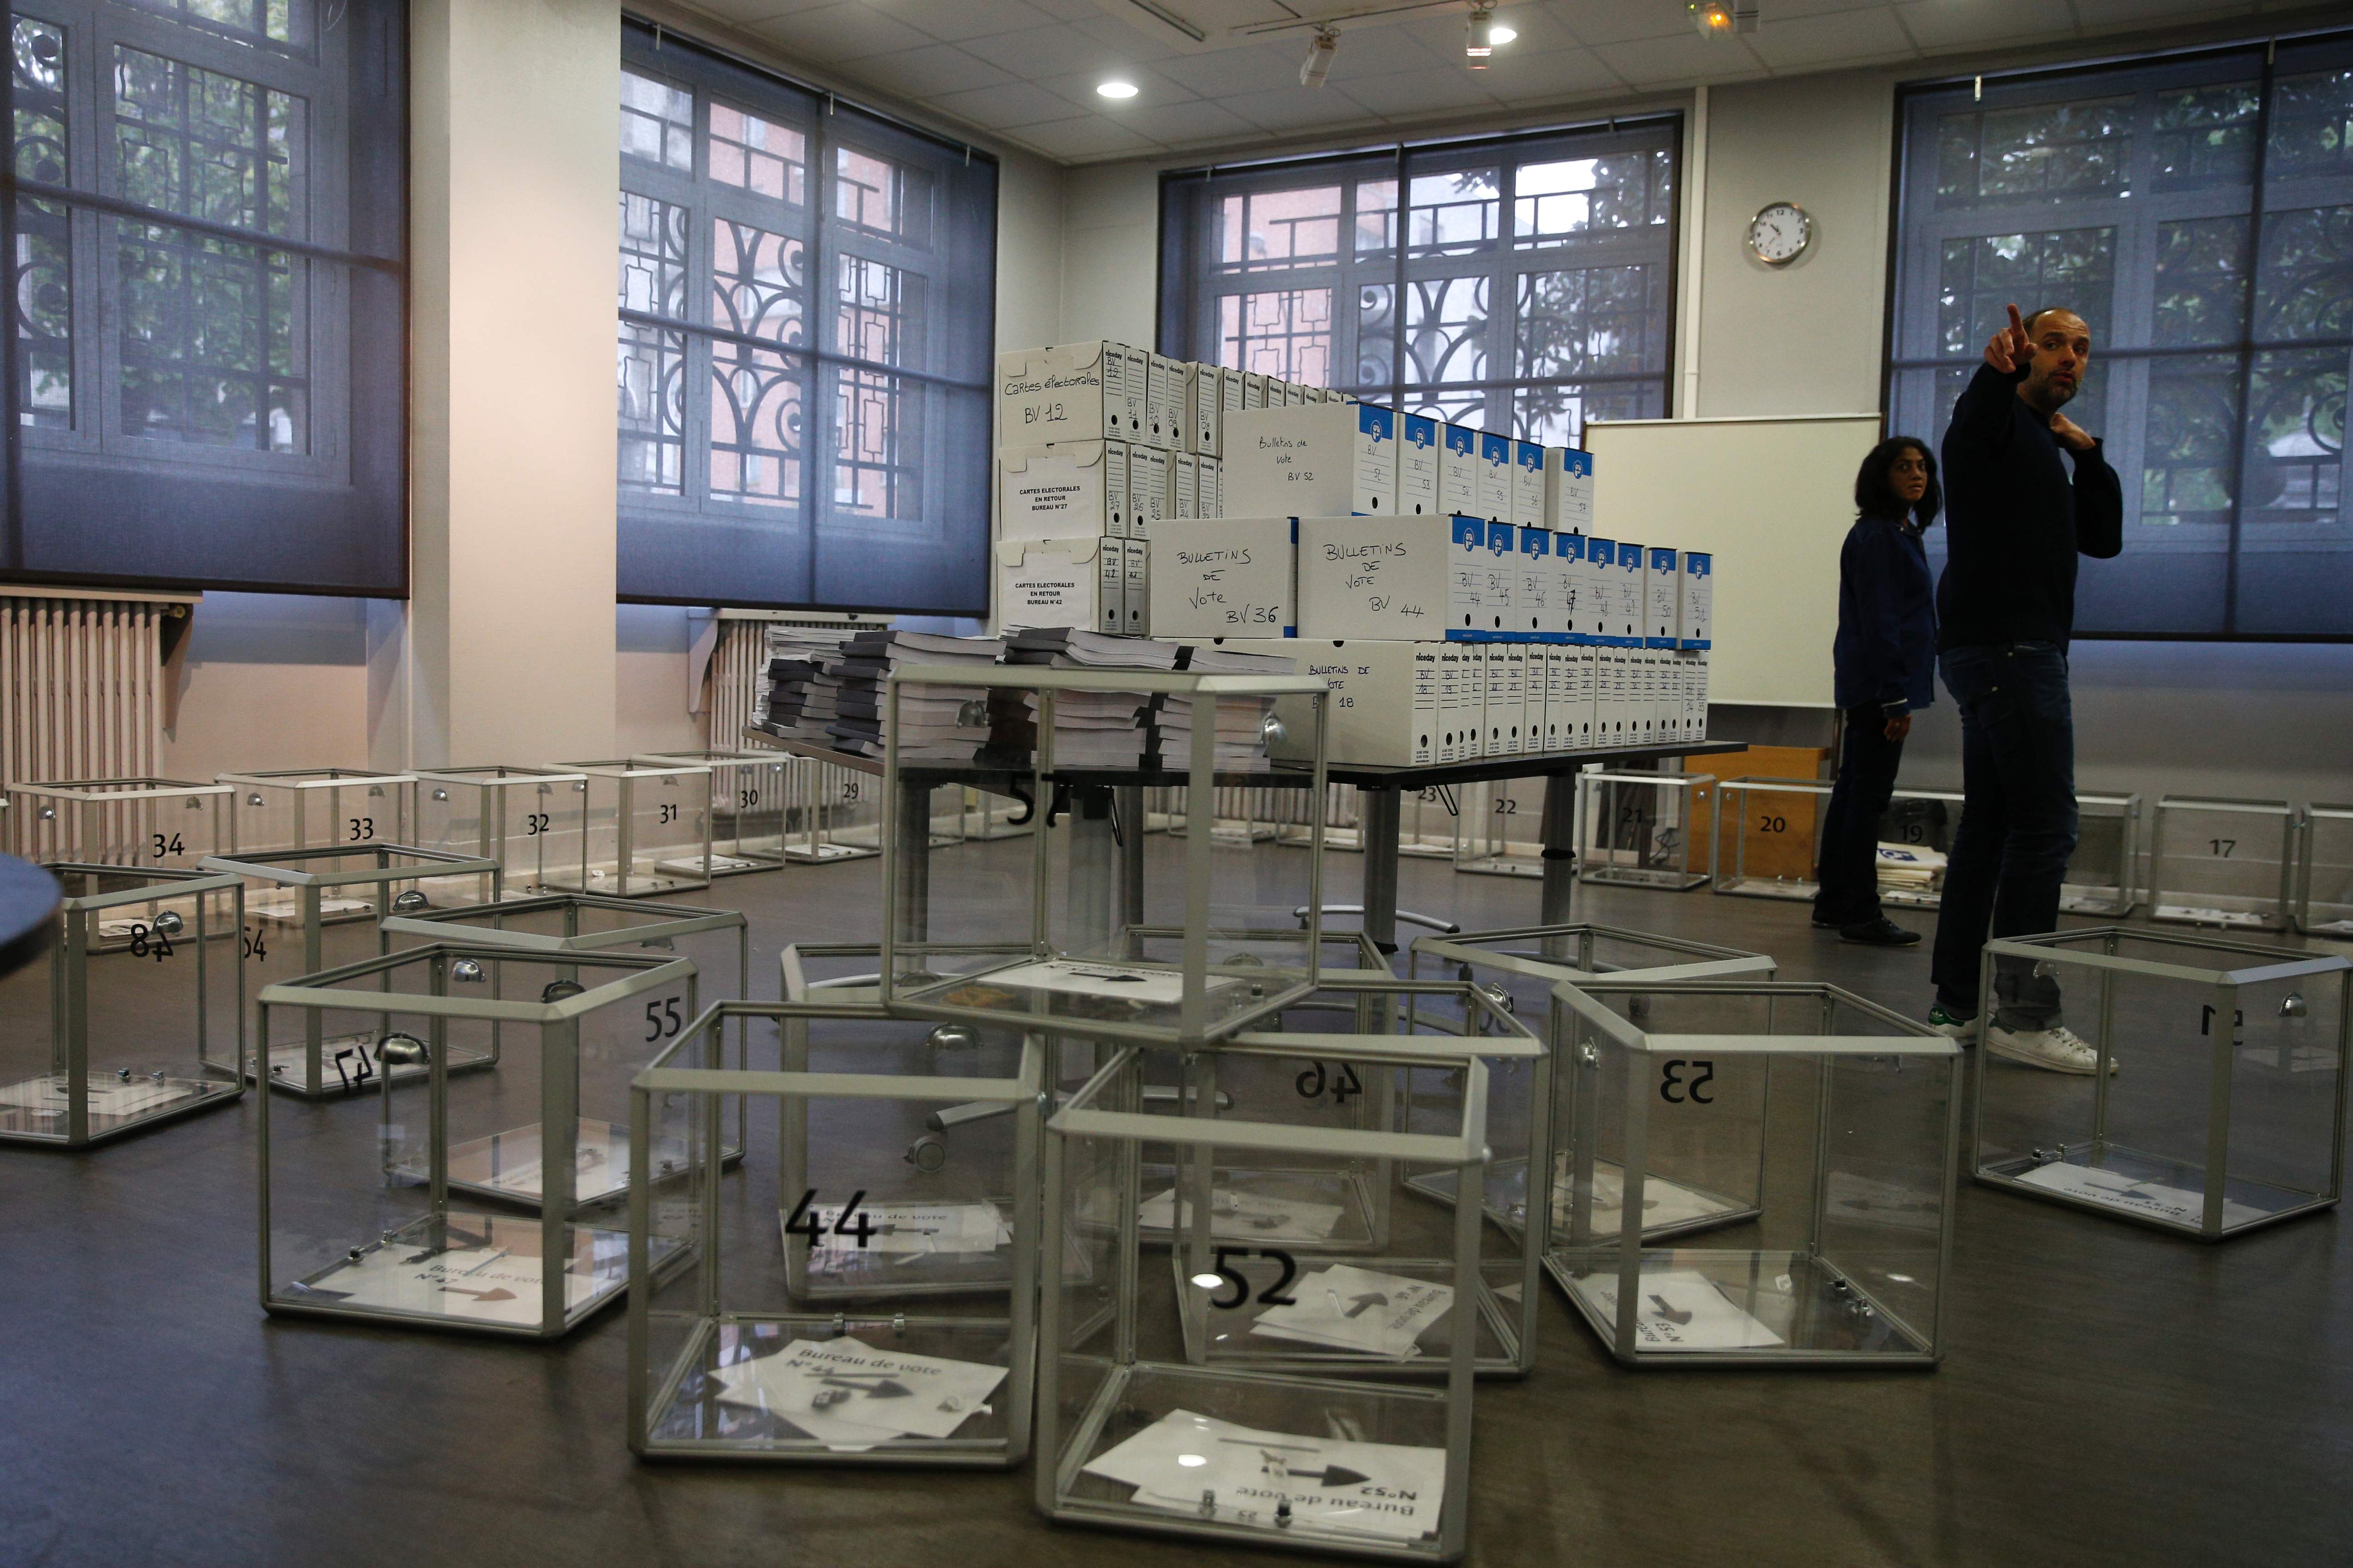 تجهيز صناديق الاقتراع داخل اللجان الانتخابية